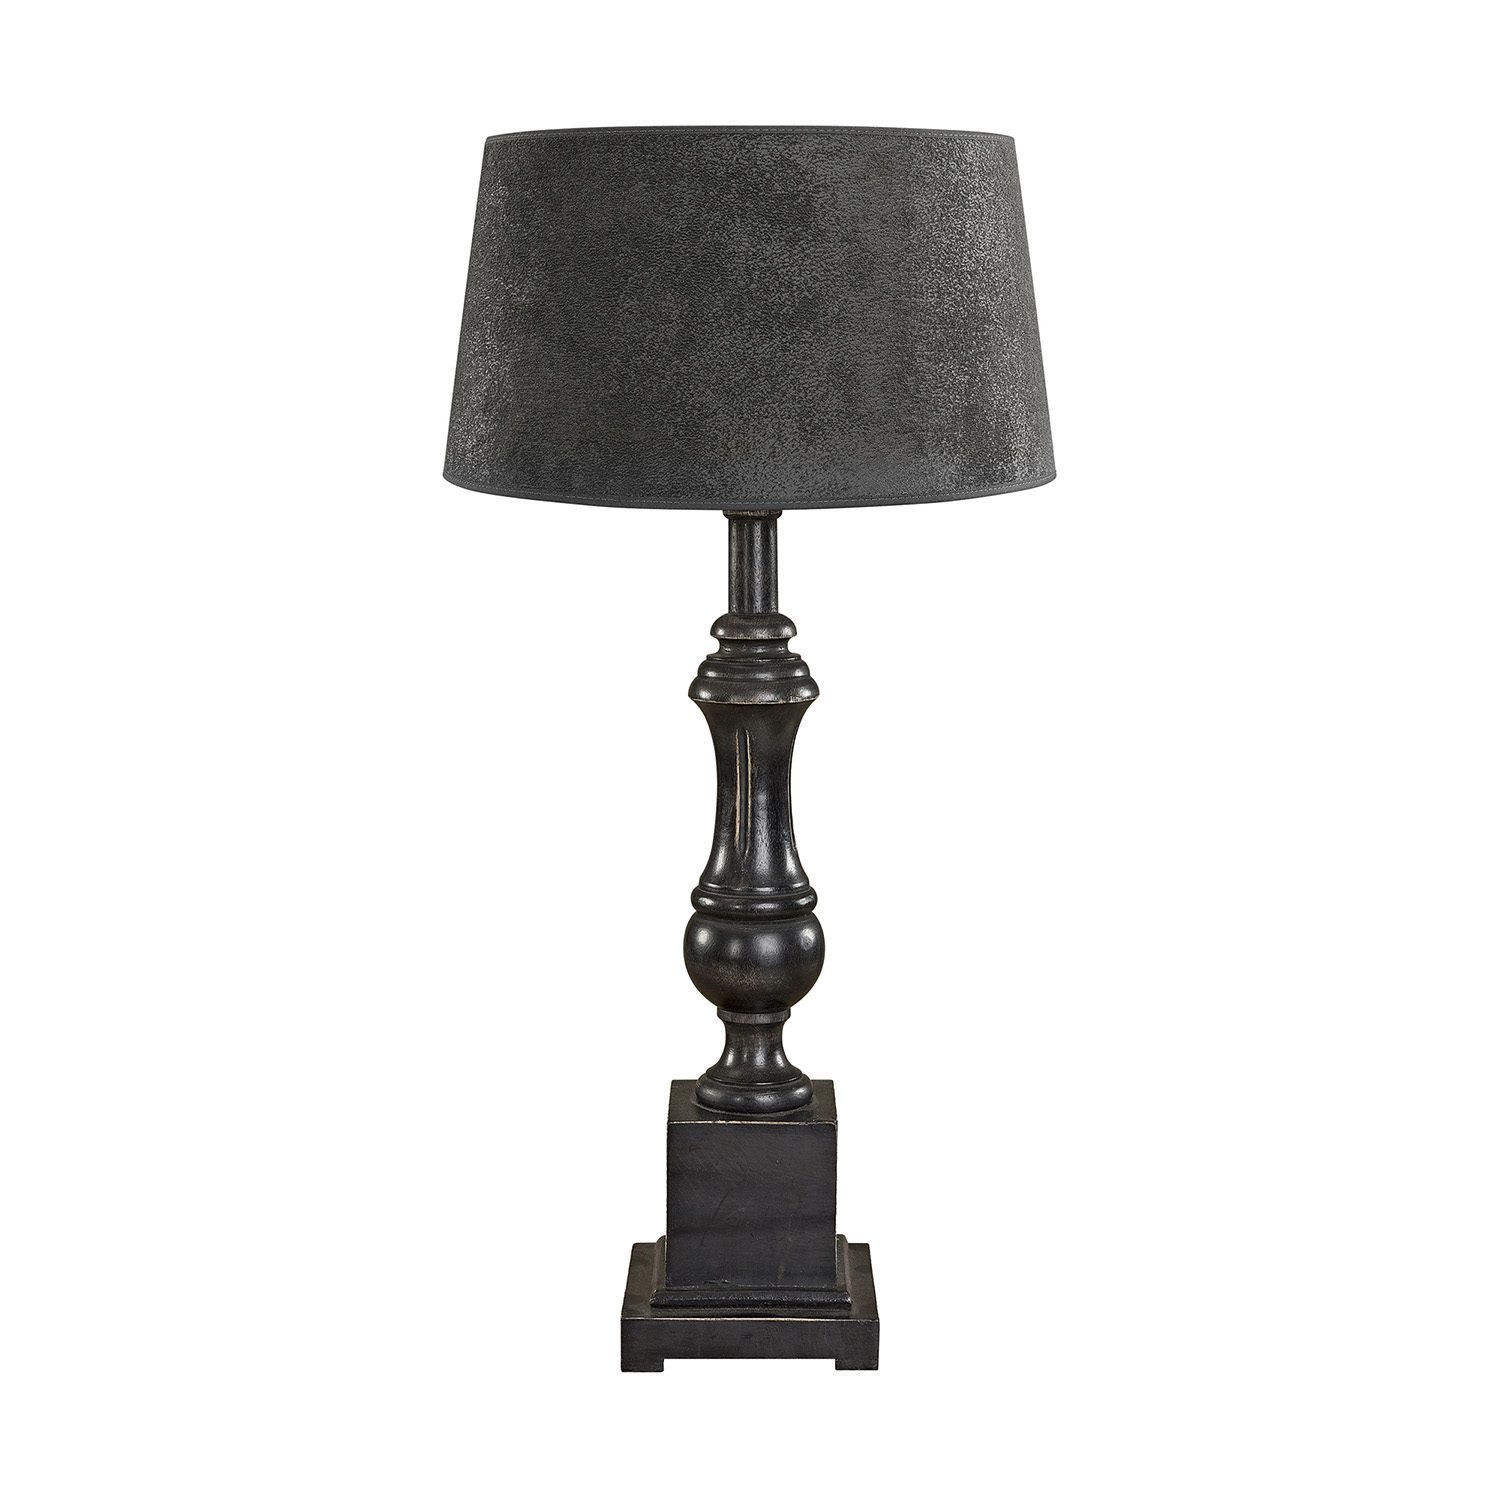 Venice bordslampa i svart med classic lampskärm i grått.